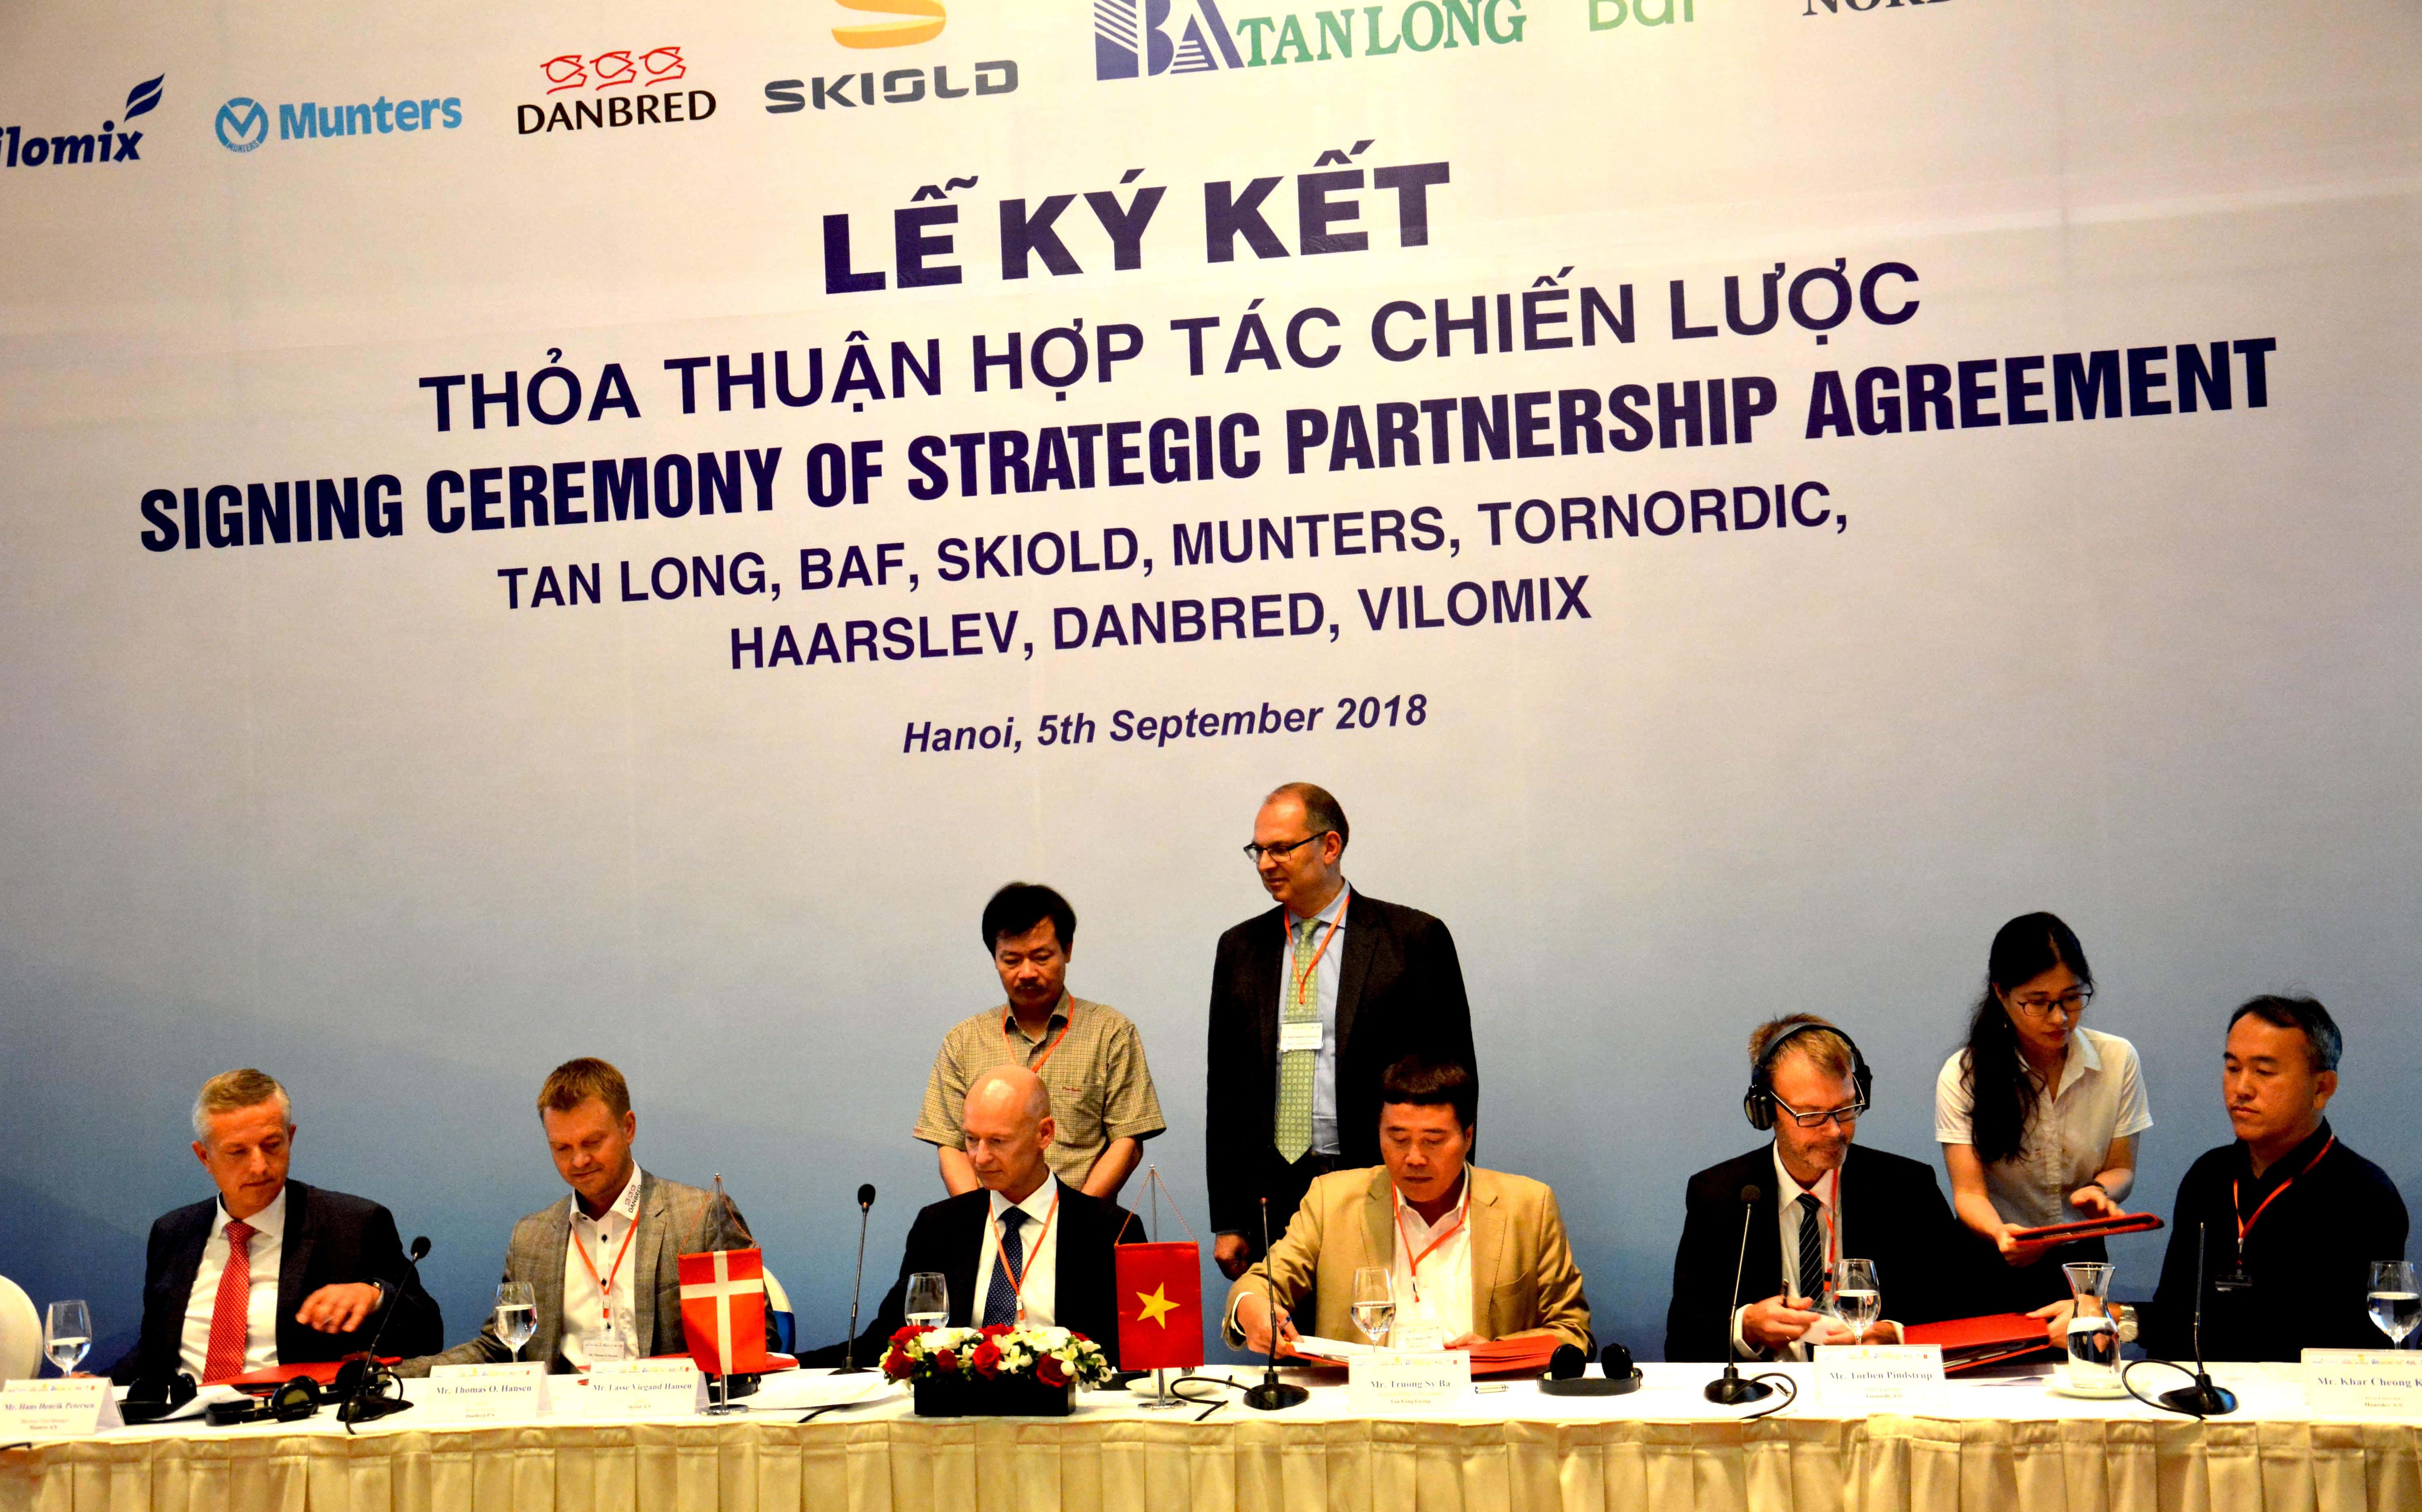 Việt Nam và Đan Mạch ký kết hợp tác trong lĩnh vực sản xuất nông nghiệp - ảnh 1